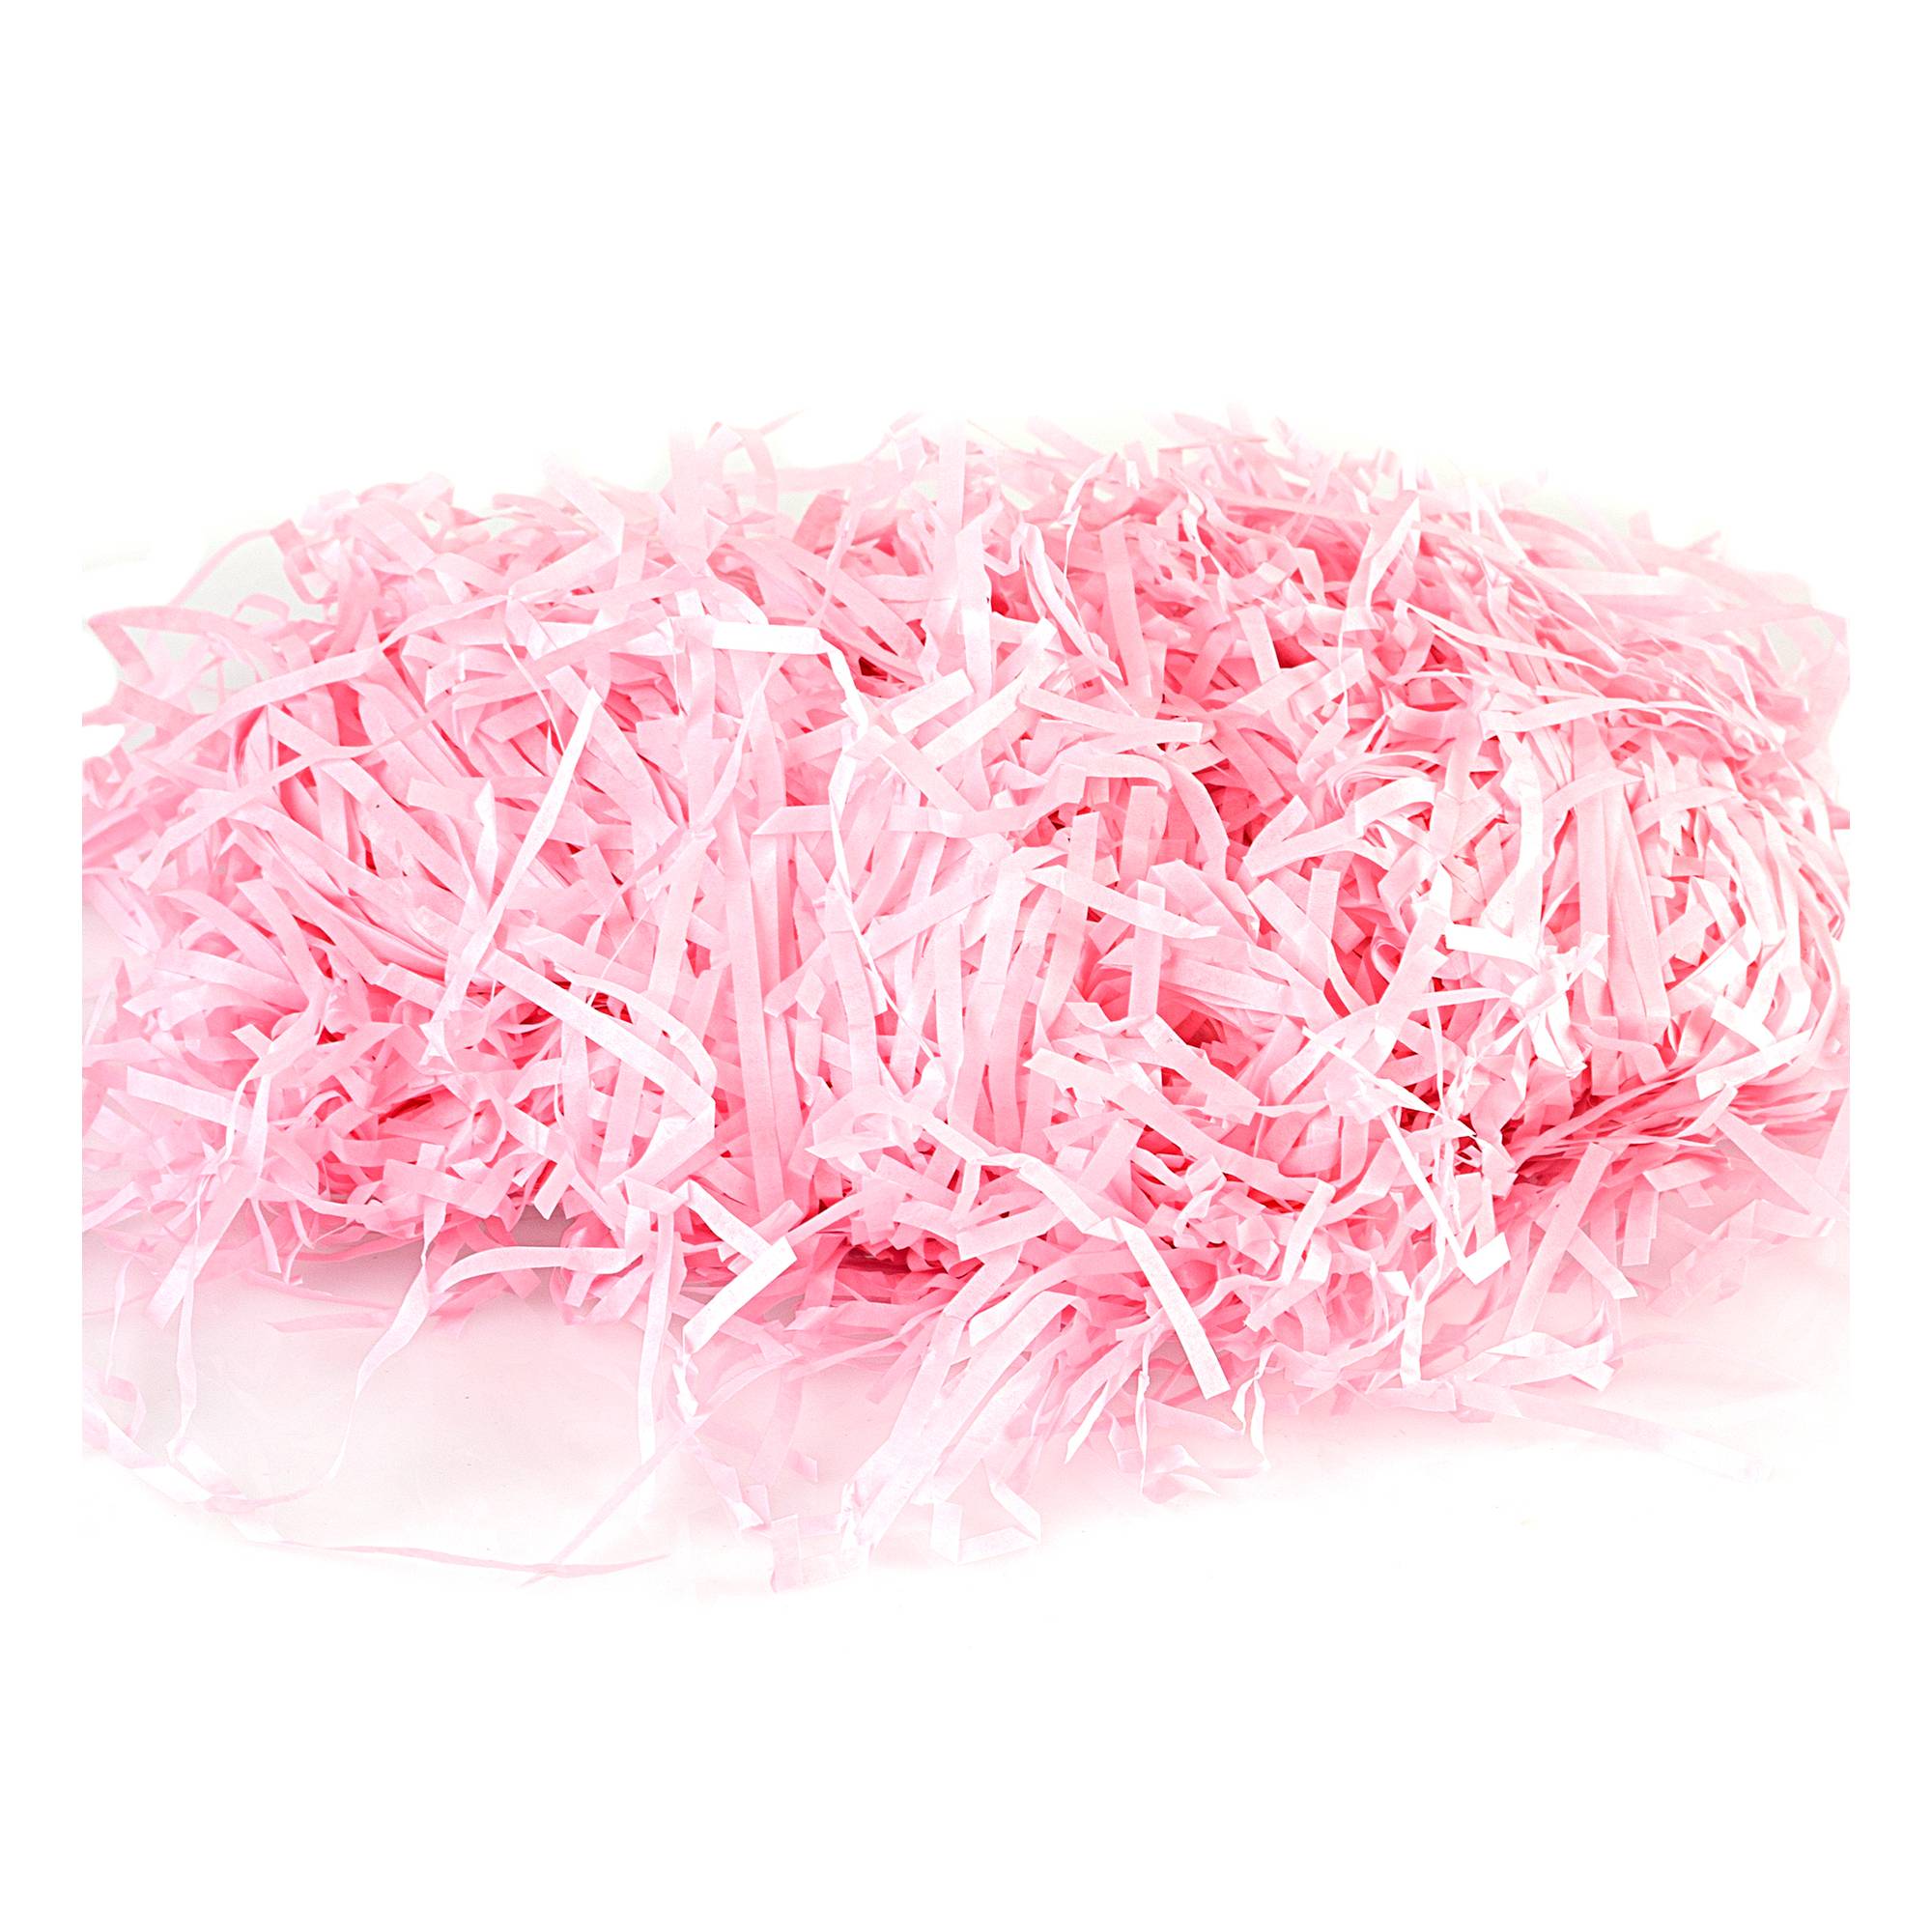 Hot Pink Shredded Tissue Paper